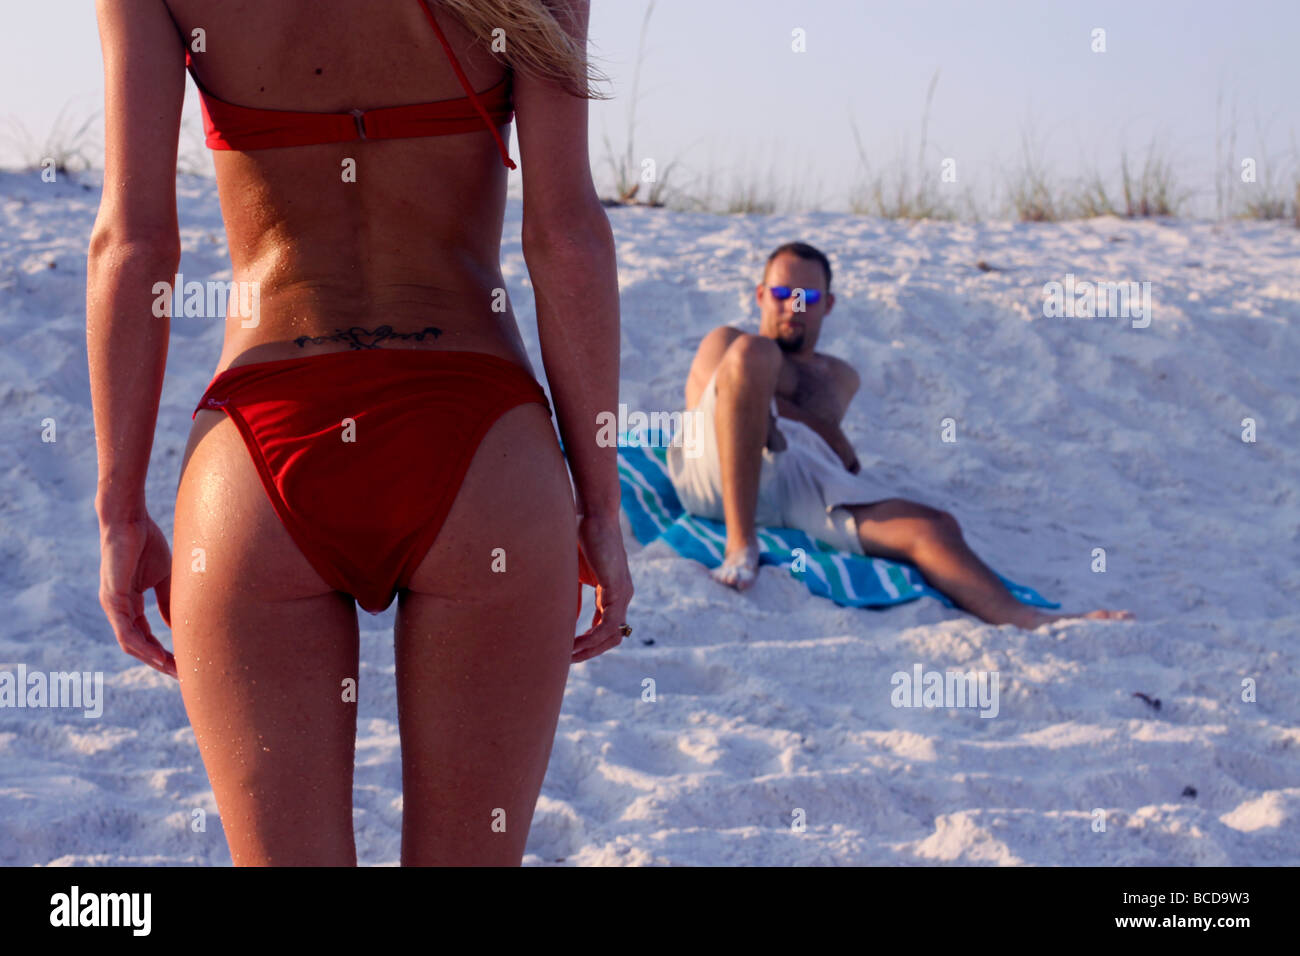 Sex-Appeal. Ein Mann in einem roten Bikini an einem Strand in Florida  Blickkontakt mit einer sexy attraktive Frau mit schöne Hintern  Stockfotografie - Alamy